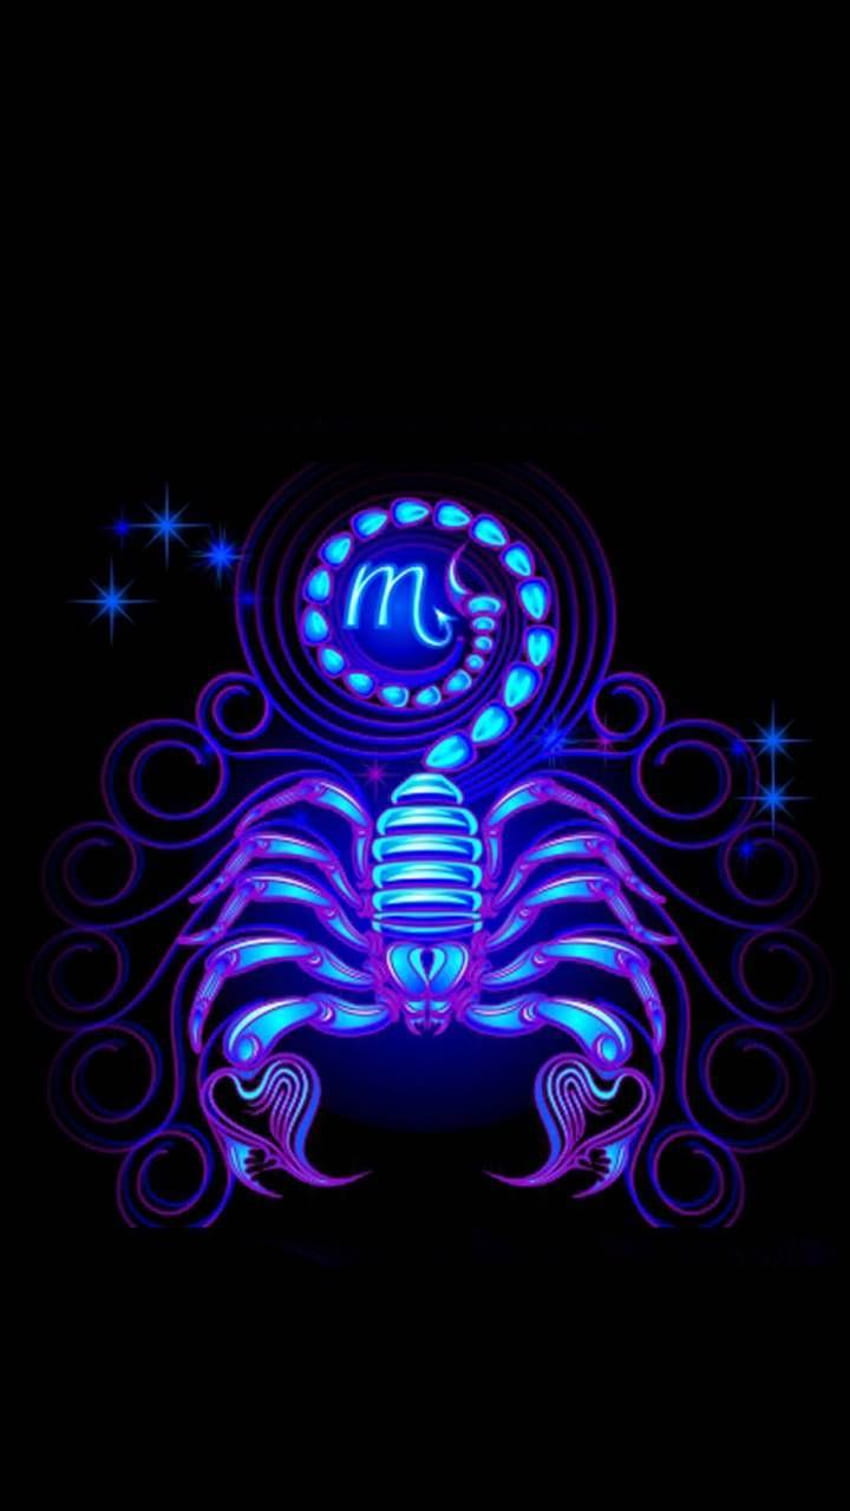 Zodiac Sign by honeybee87 - 07. Zodiaco escorpio arte, Signos del zodiaco escorpio, Tatuajes del zodiaco escorpio y Escorpio femenino fondo de pantalla del teléfono